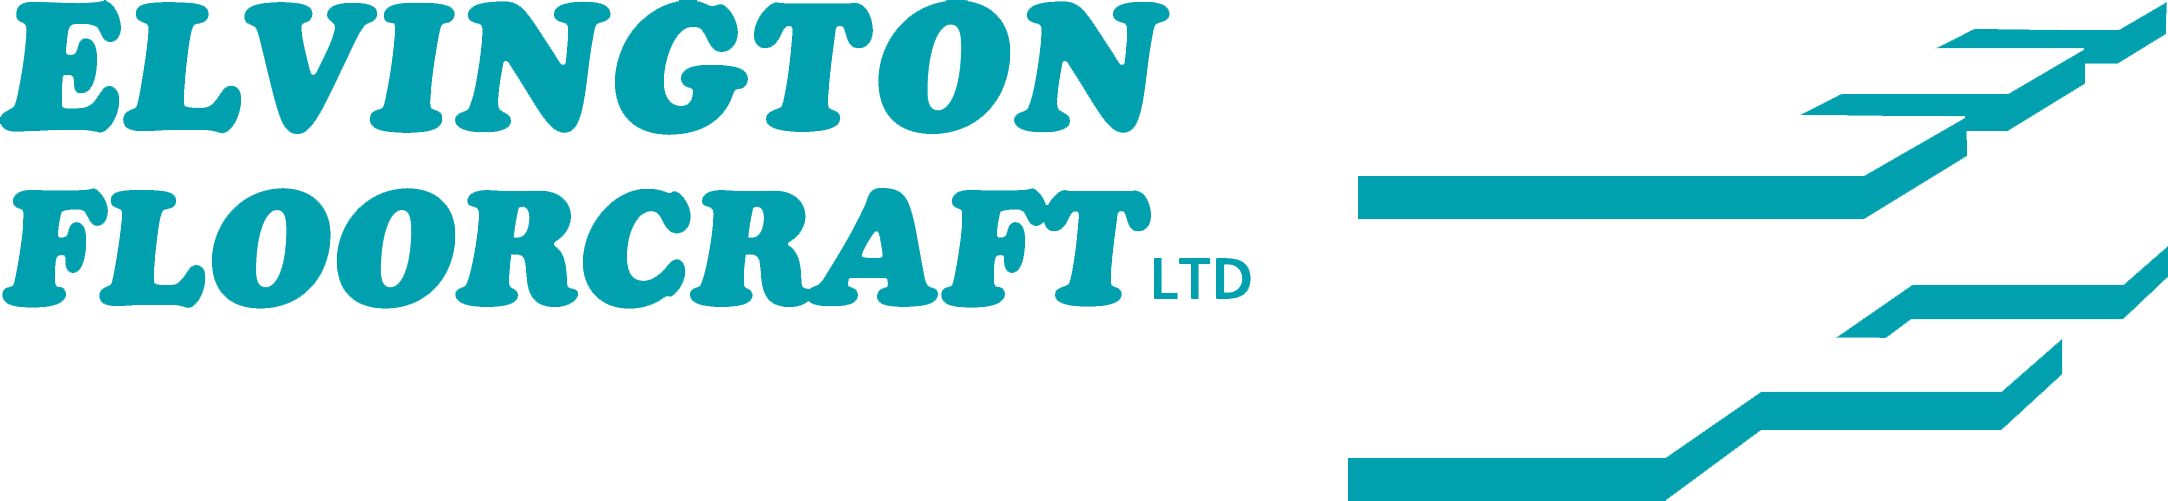 Contact Flooring contractor in York, Elvington Floorcraft